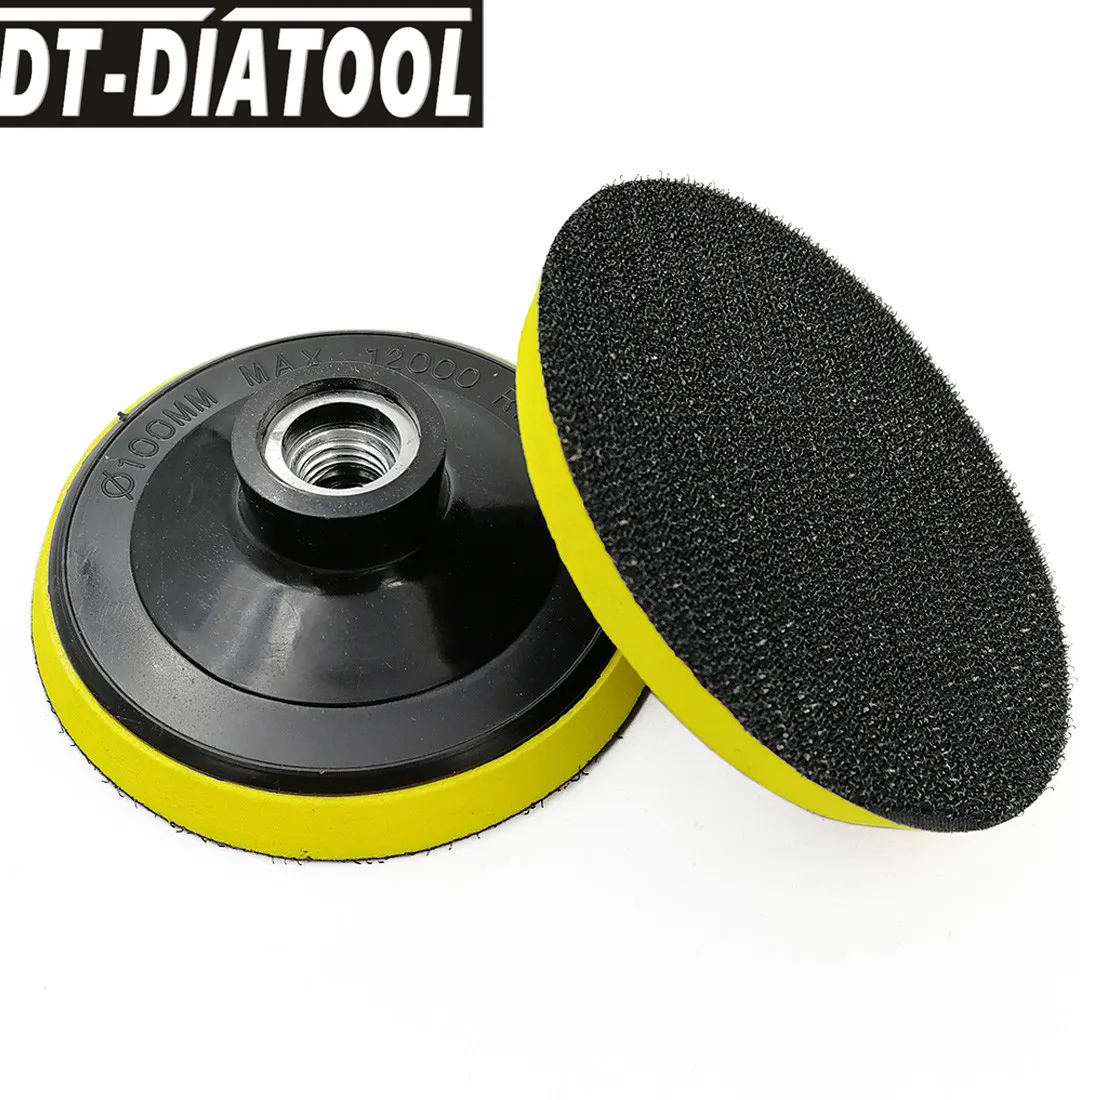 DT-DIATOOL 1 шт. диаметр 4 дюйма/100 мм пенопластовая Задняя накладка для алмазной полировки Wtih M14 соединение используется для шлифовального диска